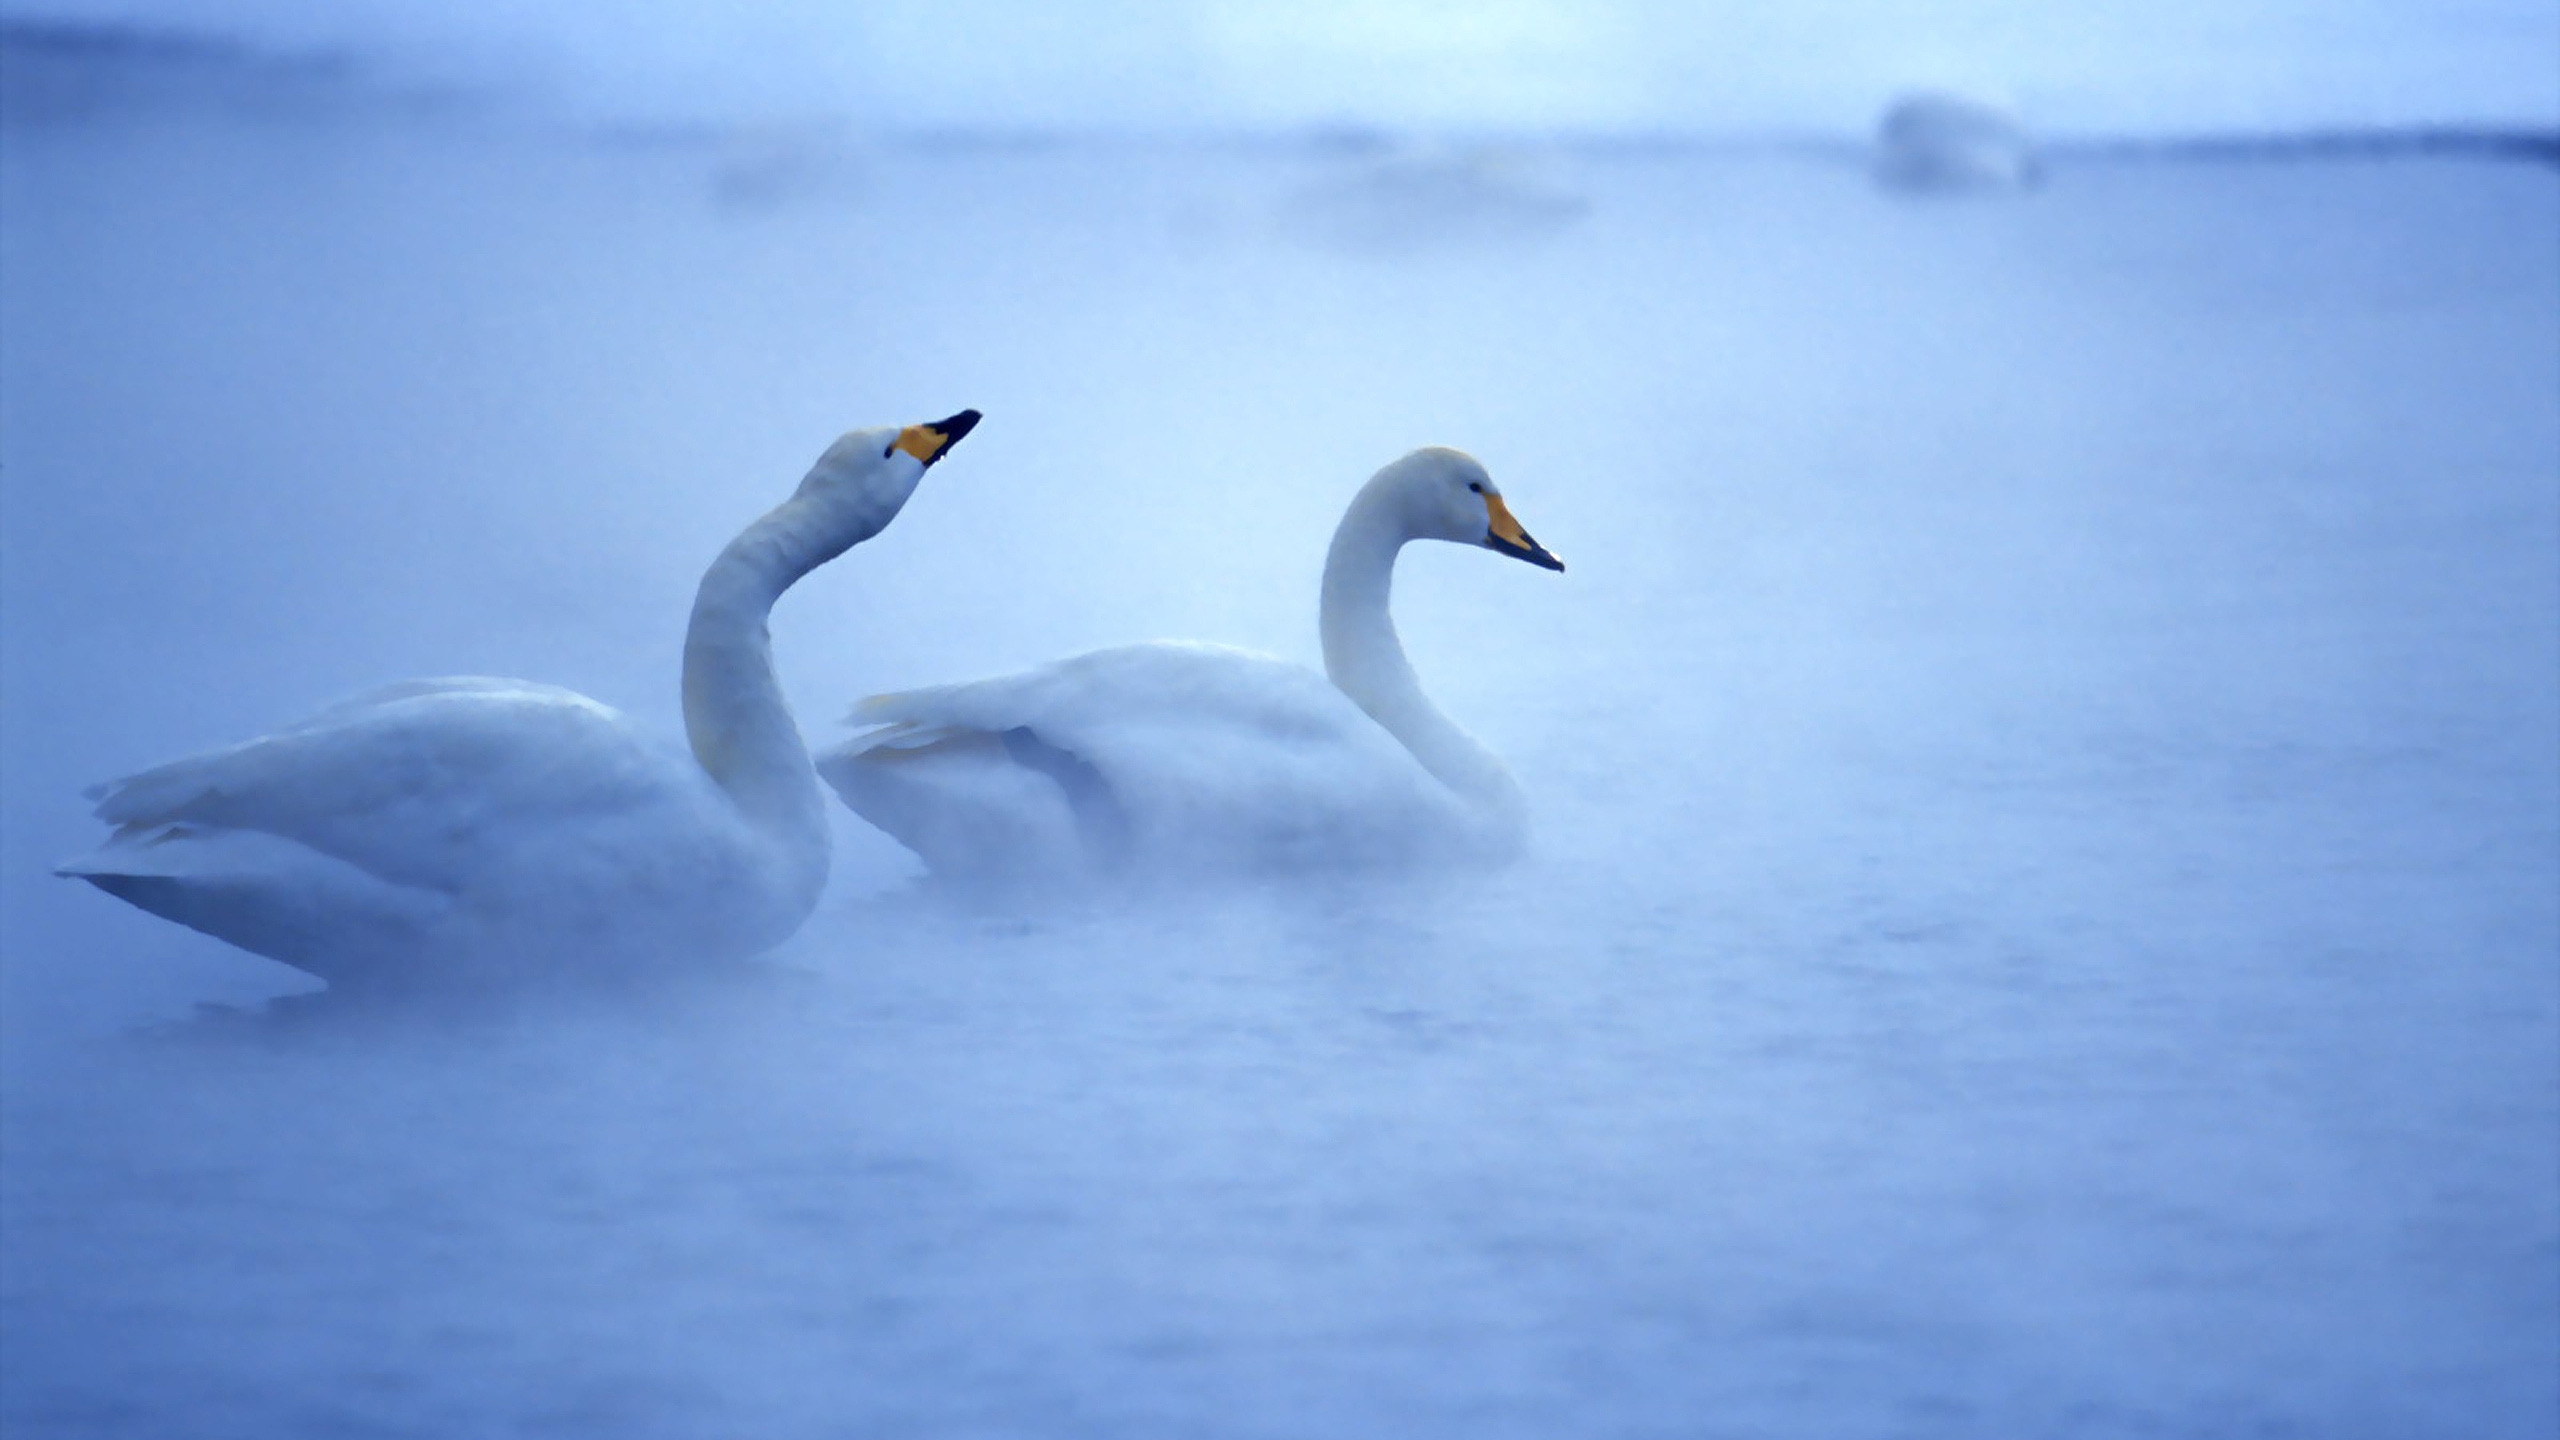 Lovely Swans for 2560x1440 HDTV resolution